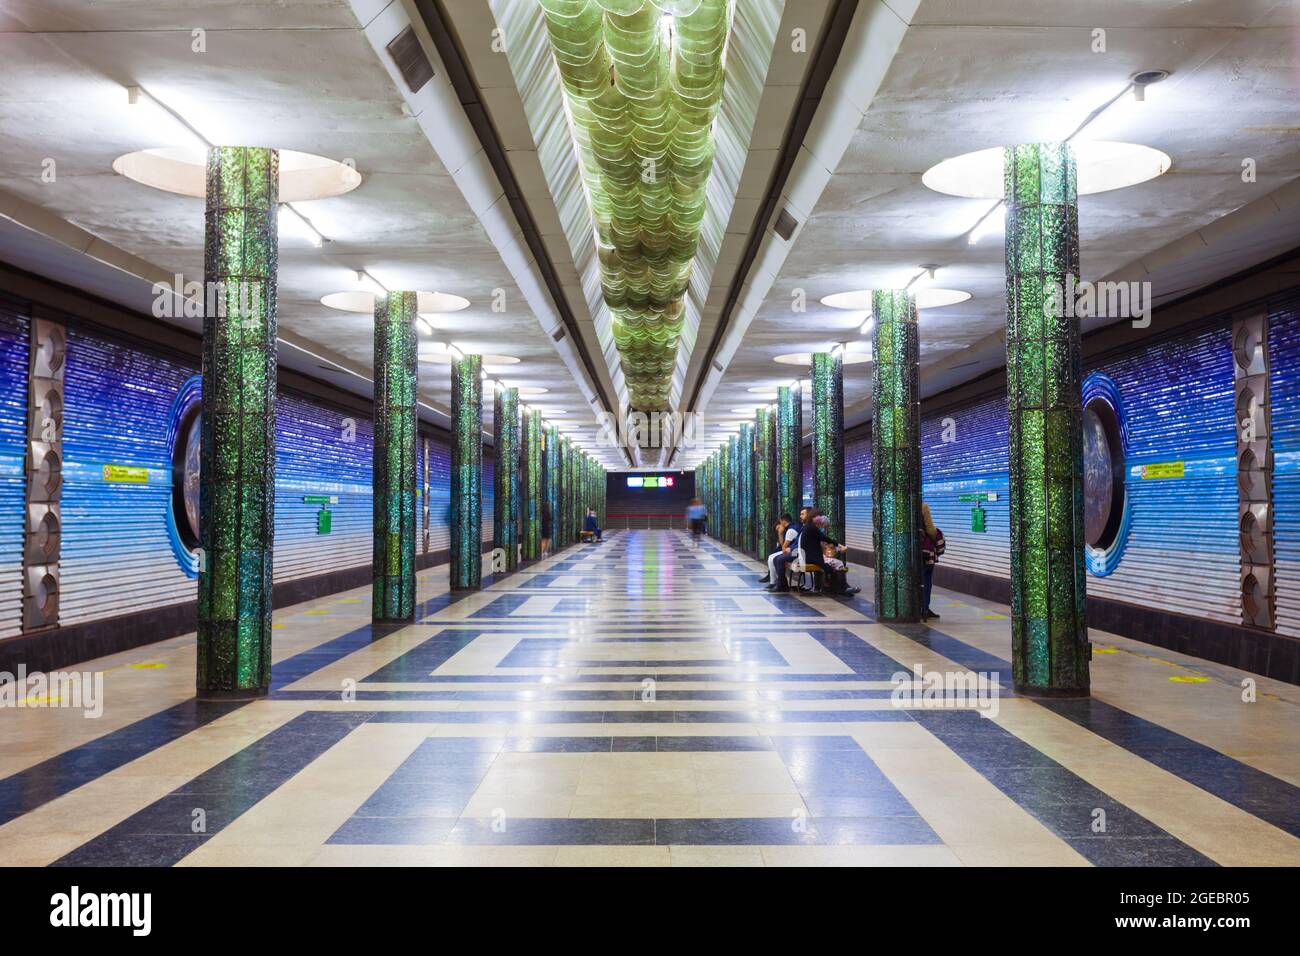 Tachkent, Ouzbékistan - 11 avril 2021 : intérieur de Kosmonavtlar, station du métro Tashkent en Ouzbékistan Banque D'Images